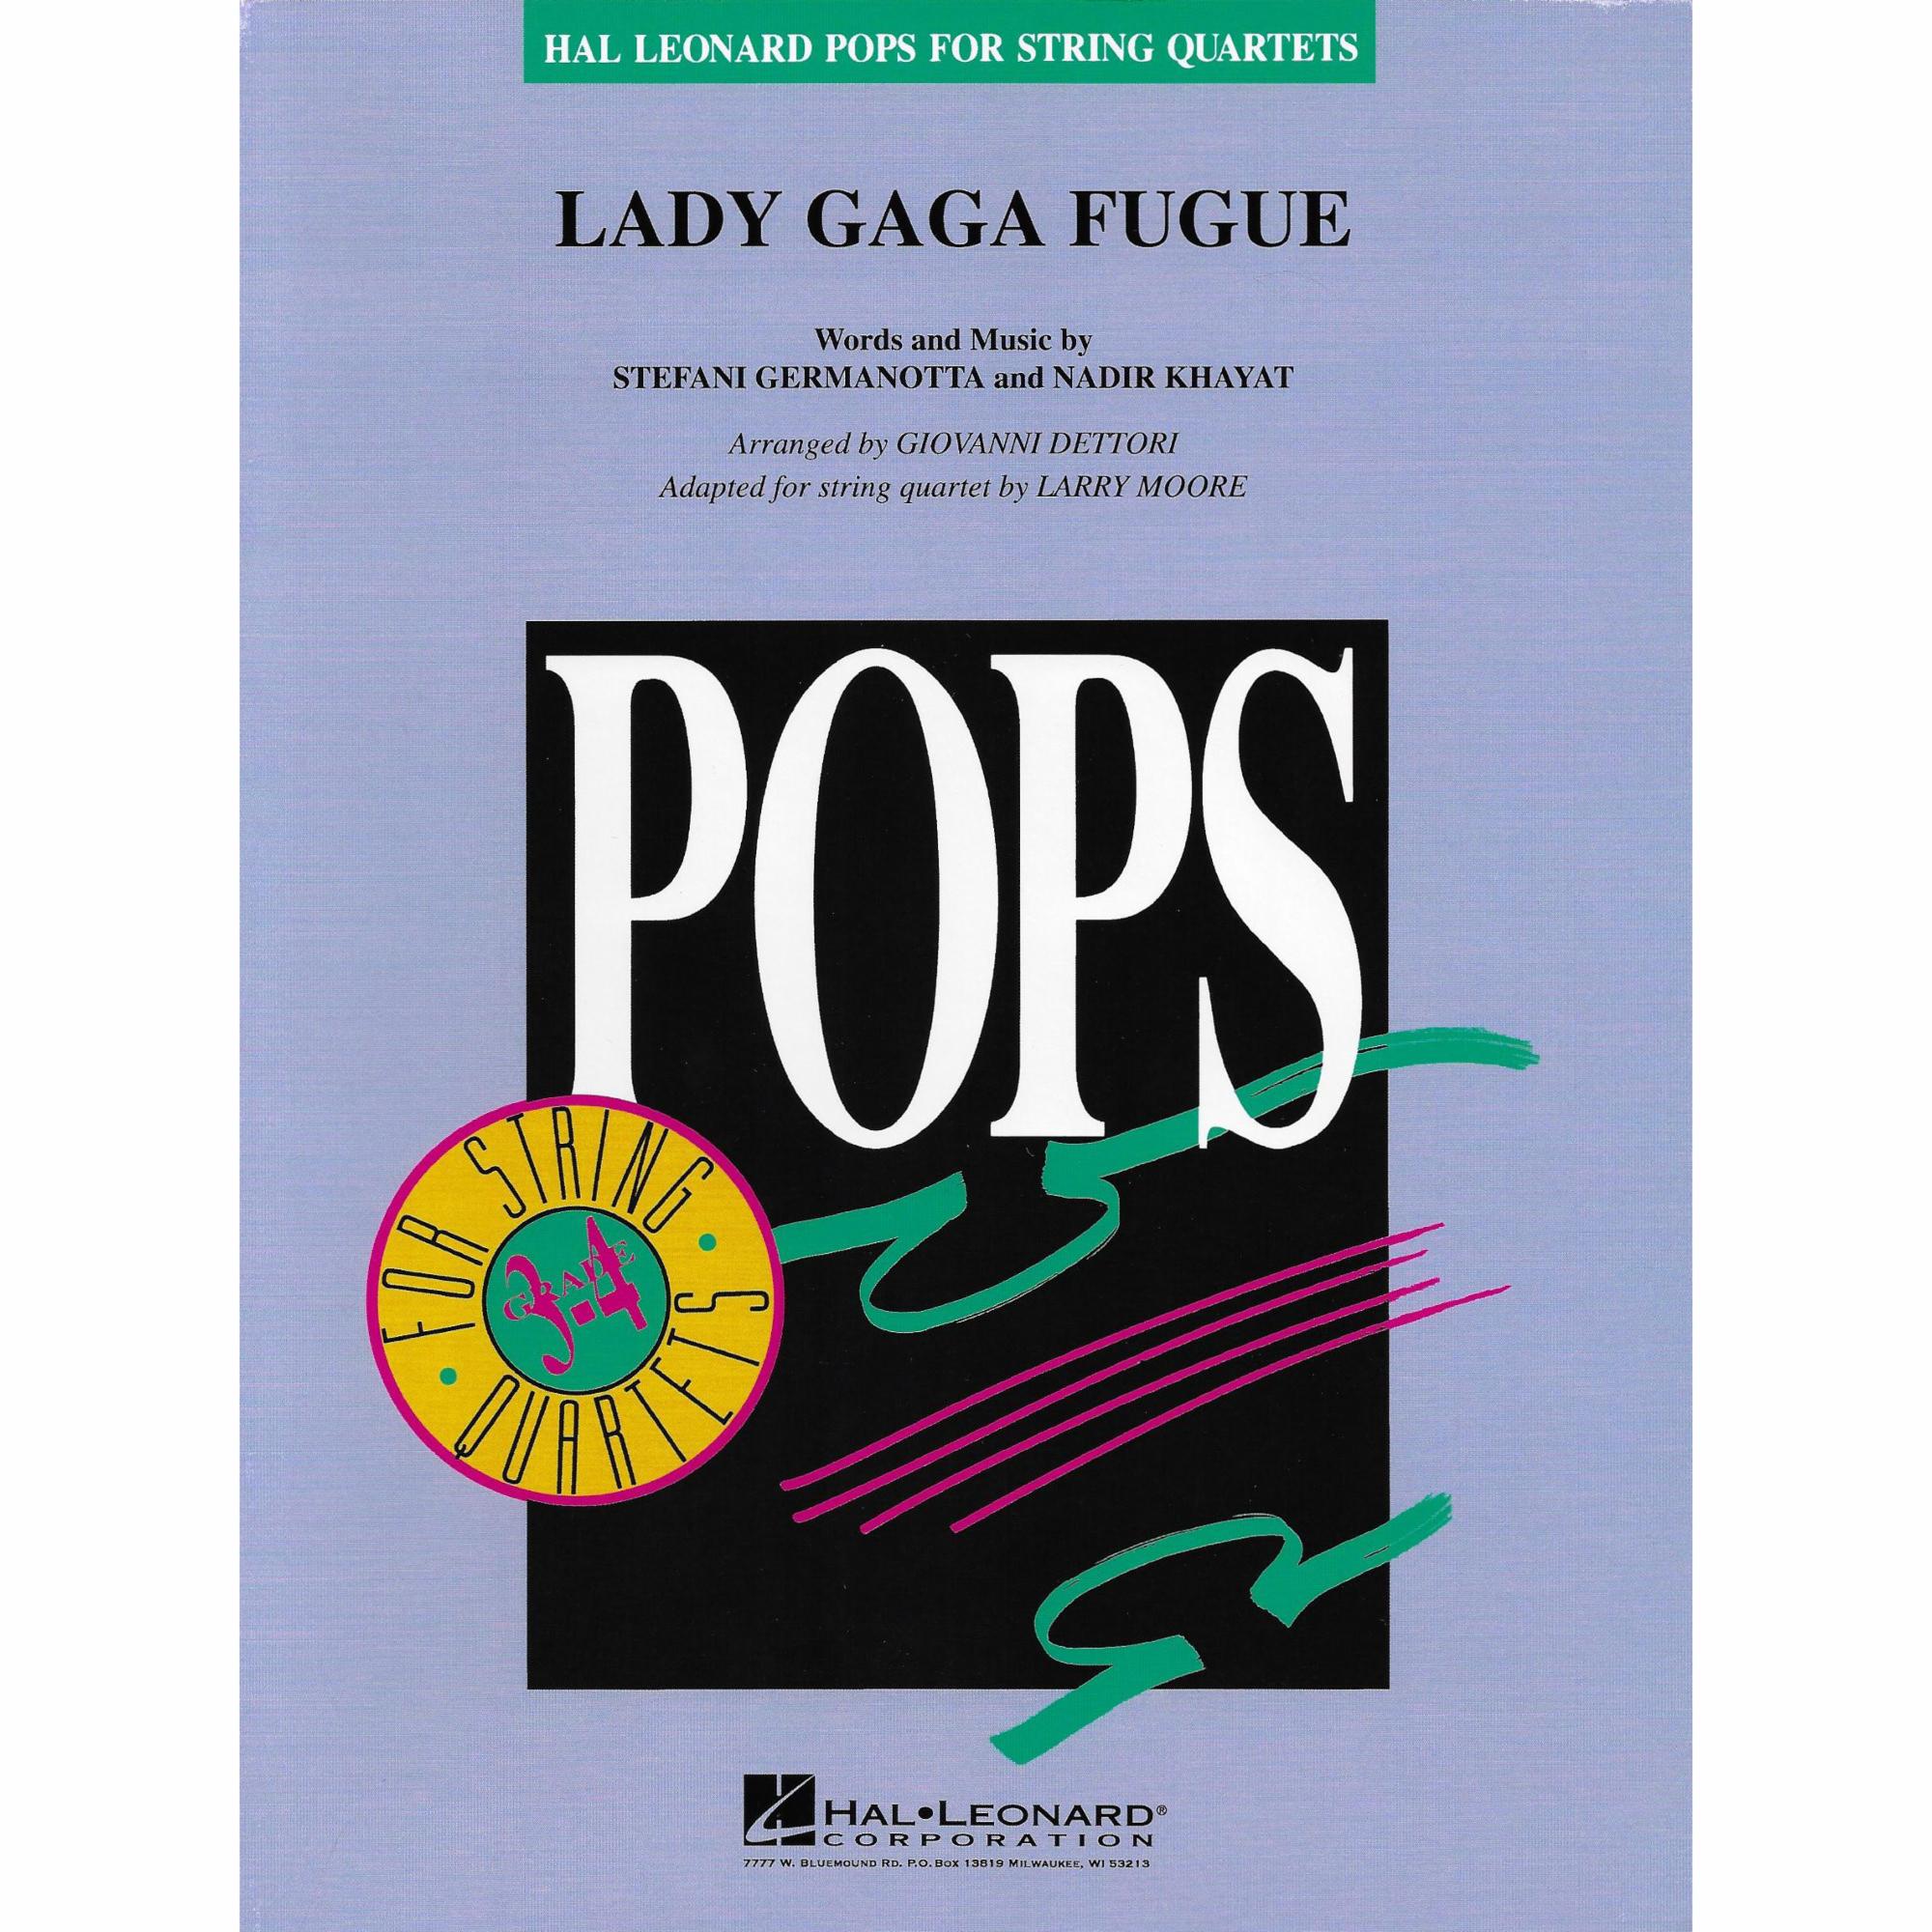 Lady Gaga Fugue for String Quartet